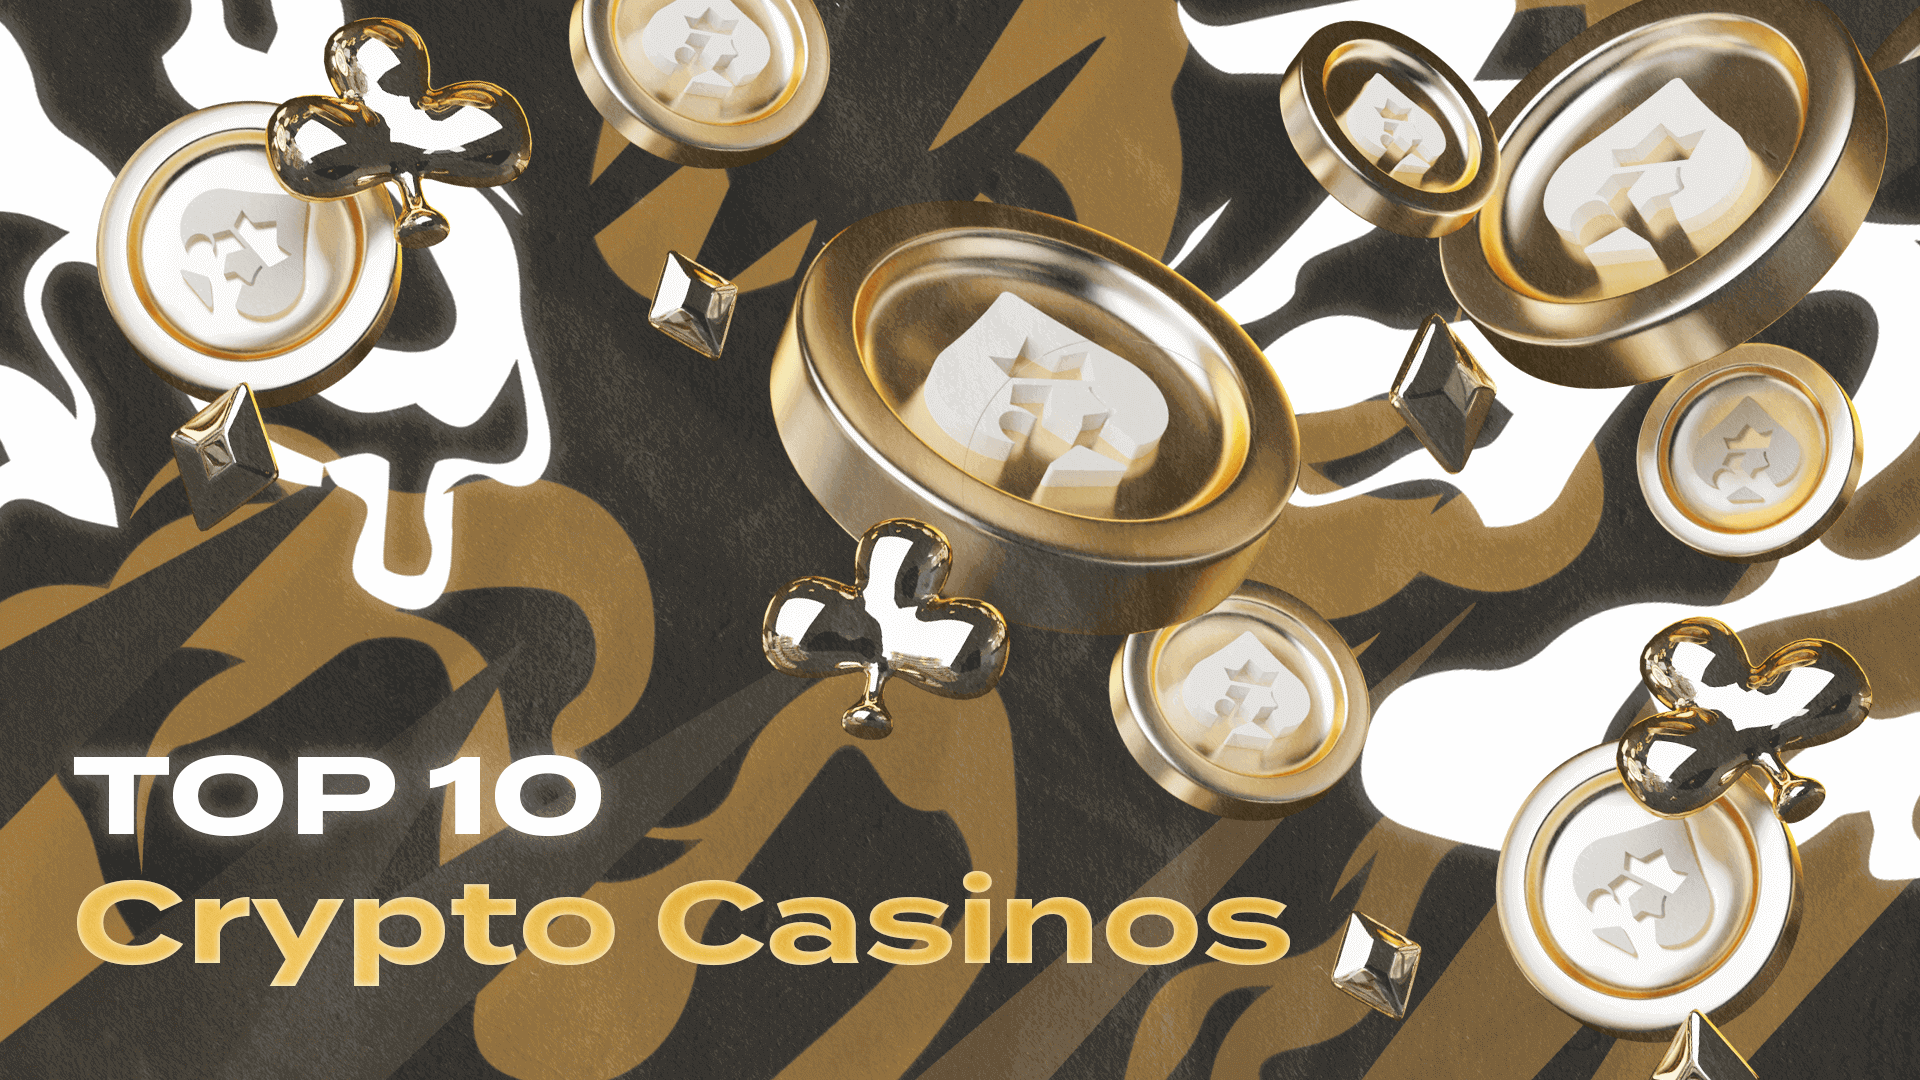 DegenWin: The Ultimate Crypto Casino Experience in 2023